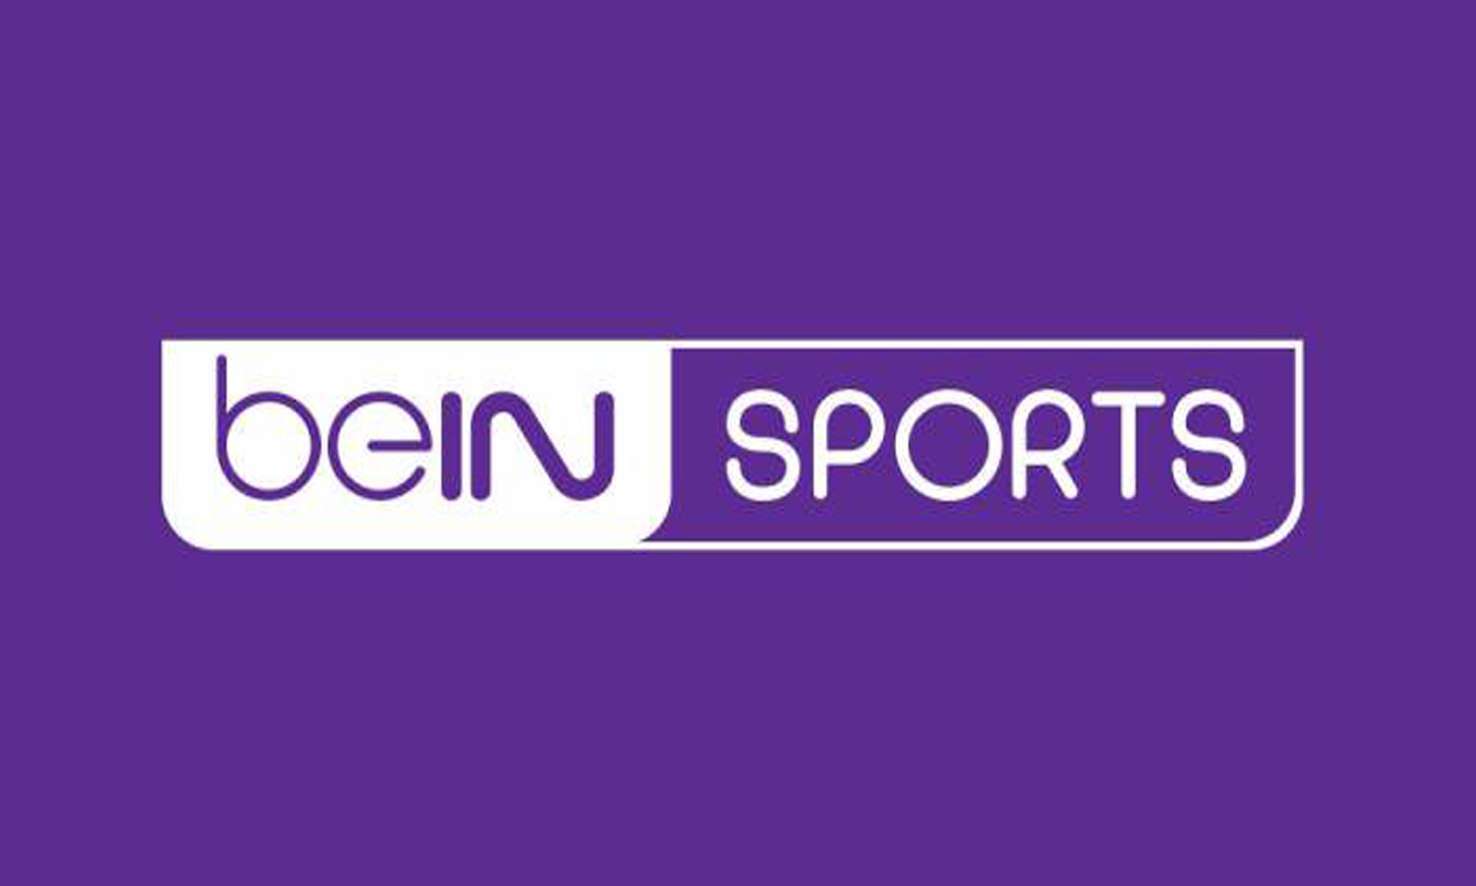 تردد قناة بي إن سبورت المفتوحة 2019 beIN Sports على نايل سات المصري وسهيل سات القطري